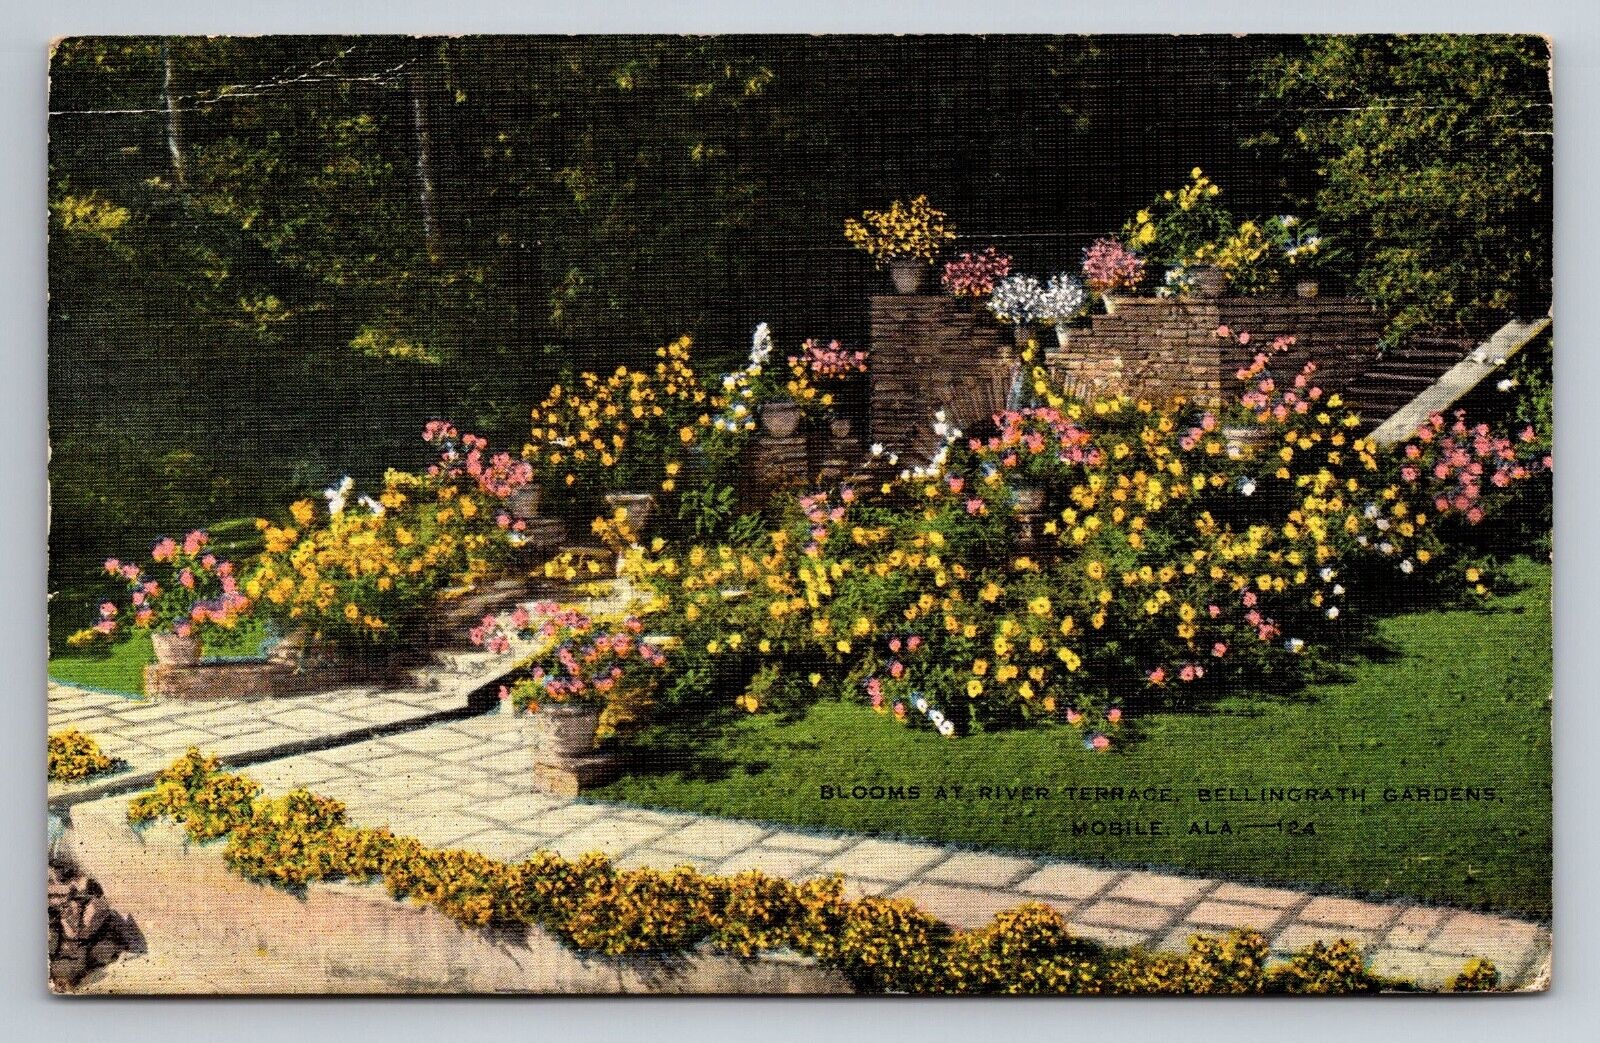 Blooms At River Terrace Bellingrath Gardens Mobile Alabama Linen Postcard